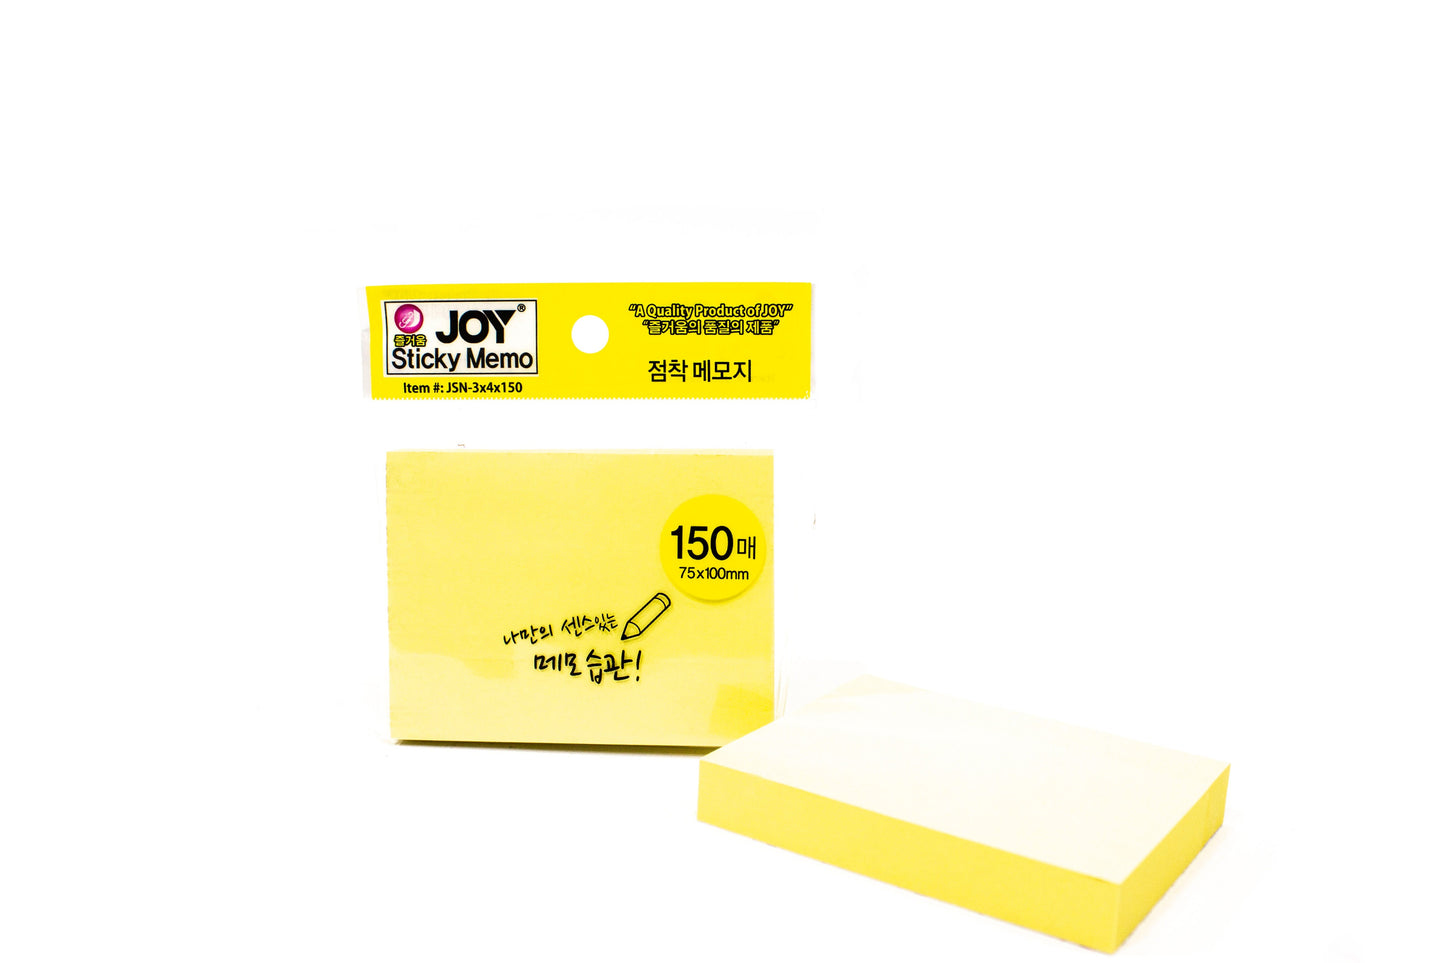 Joy Sticky Memo JSN-3x4x150 12Pad (Asstd. Color)